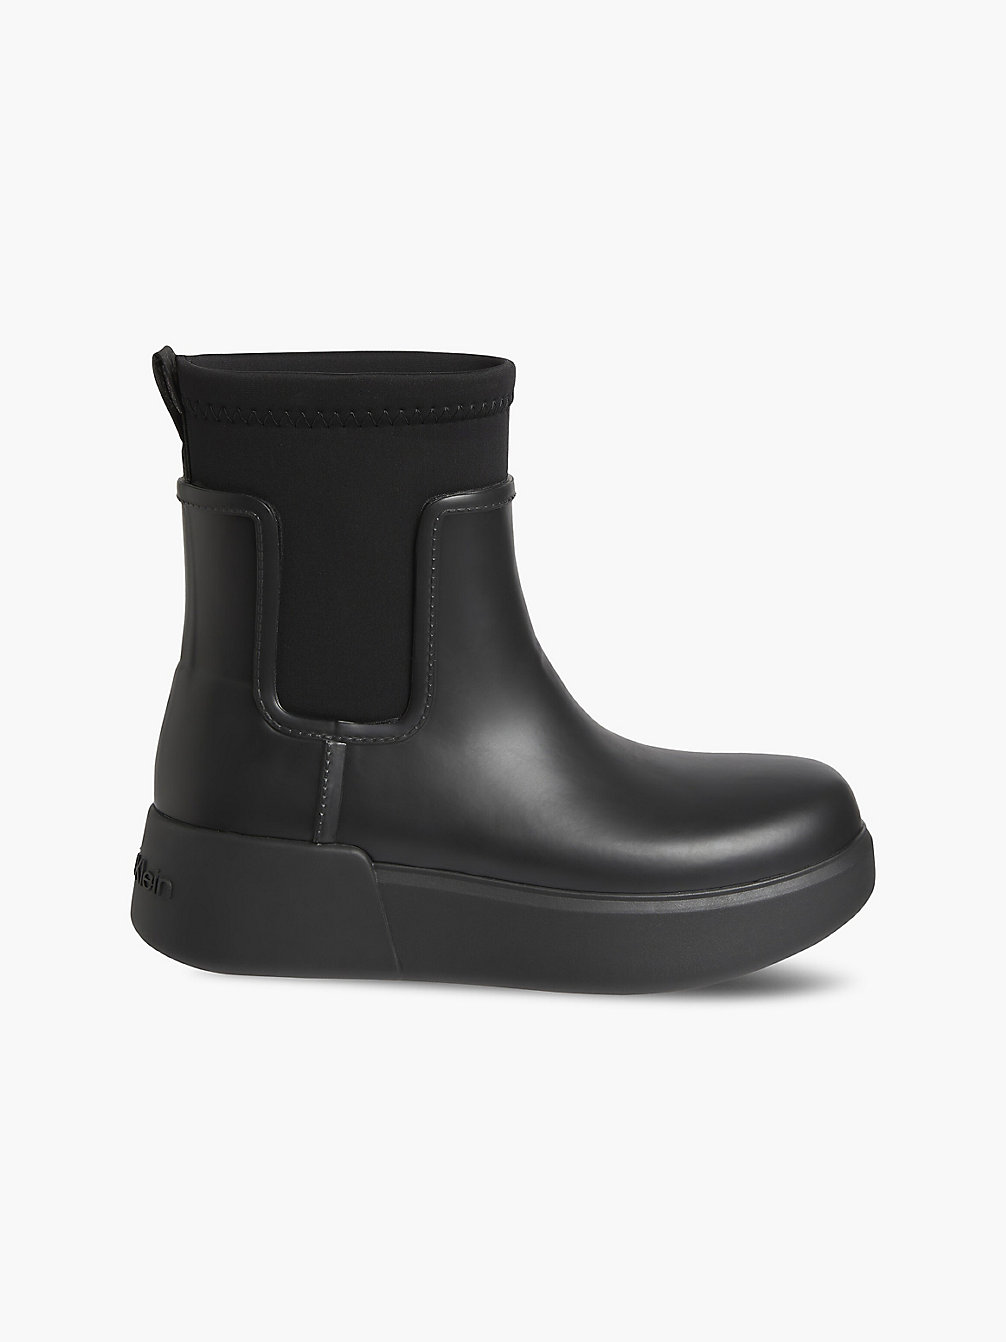 CK BLACK Wedge Rain Boots undefined women Calvin Klein